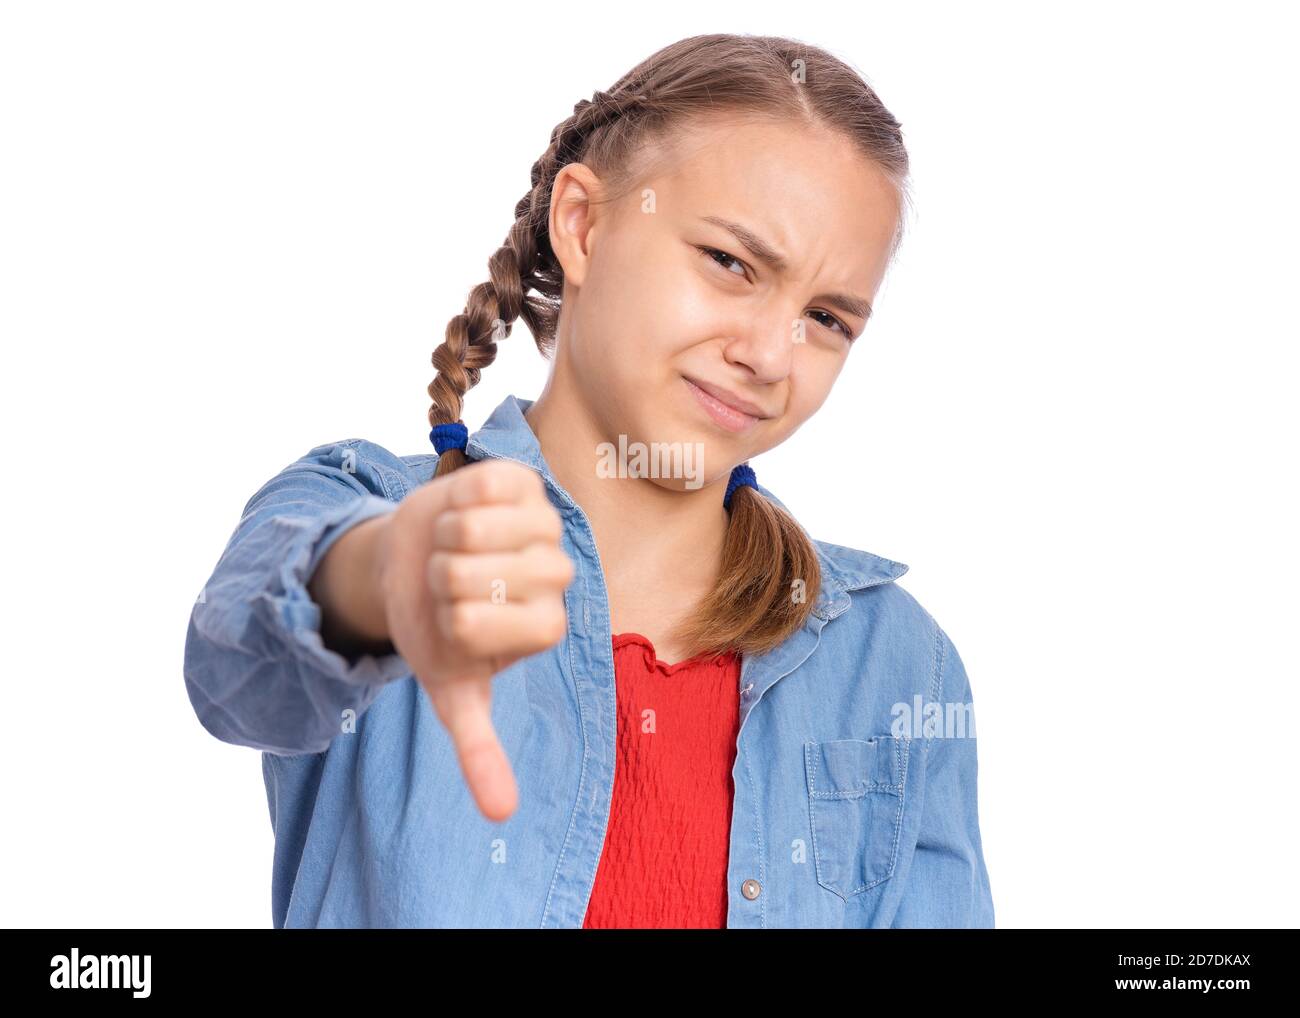 Portrait von teen Mädchen geben Daumen nach unten Geste suchen mit negativem Ausdruck und Ablehnung, isoliert auf weißem Hintergrund Stockfoto